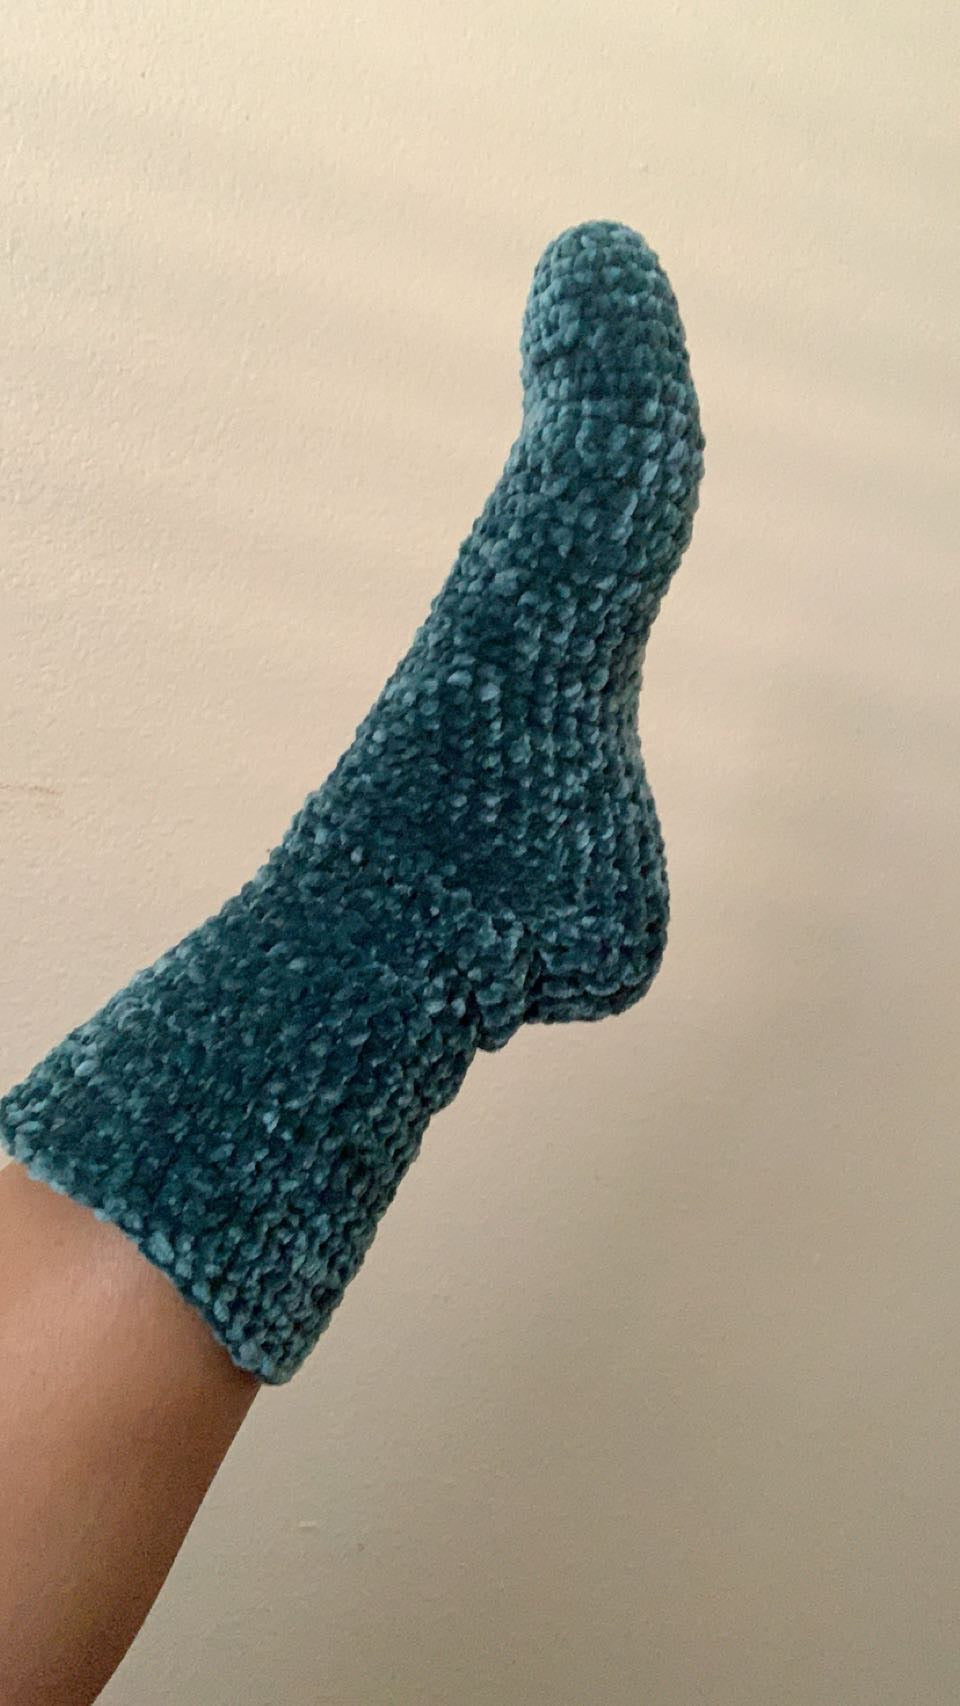 The Velvet Crochet Socks